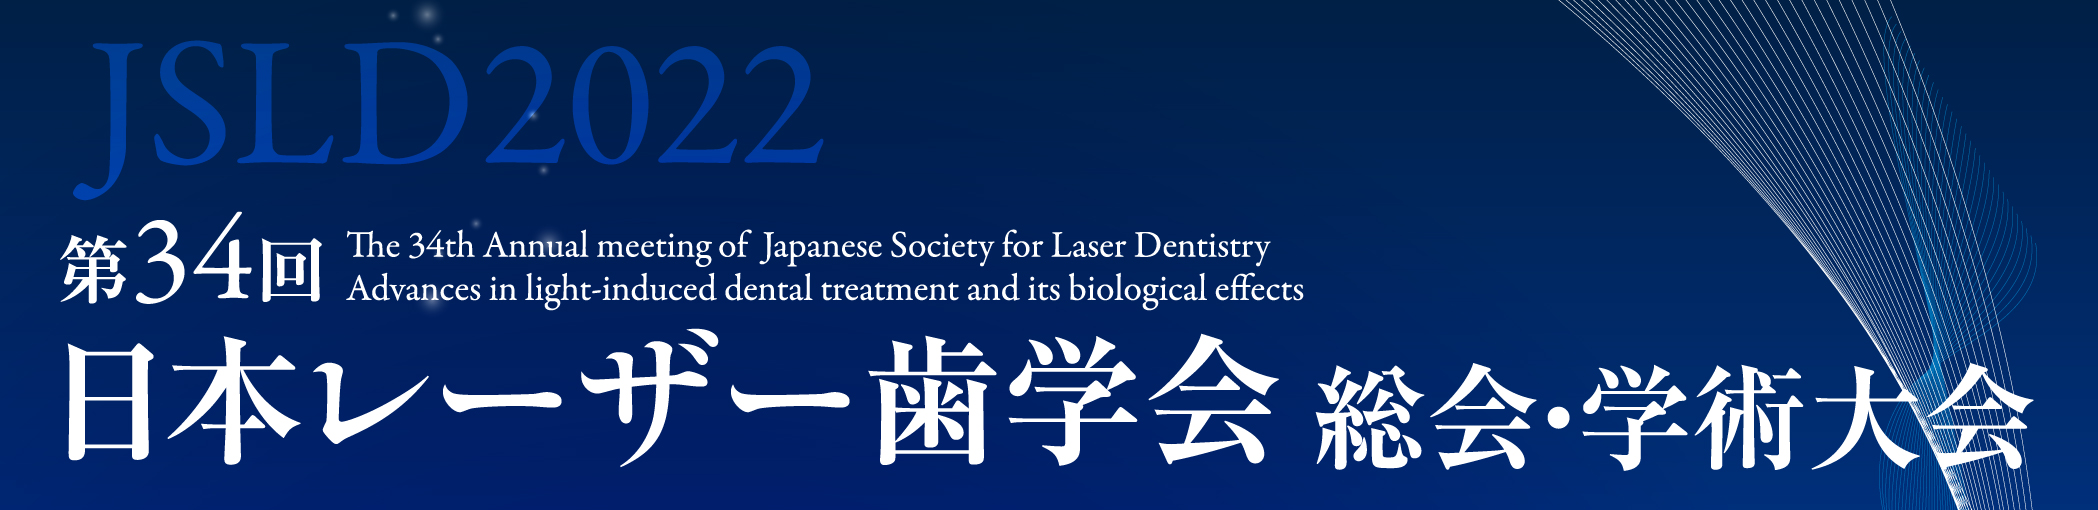 第34回日本レーザー歯学会総会・学術大会